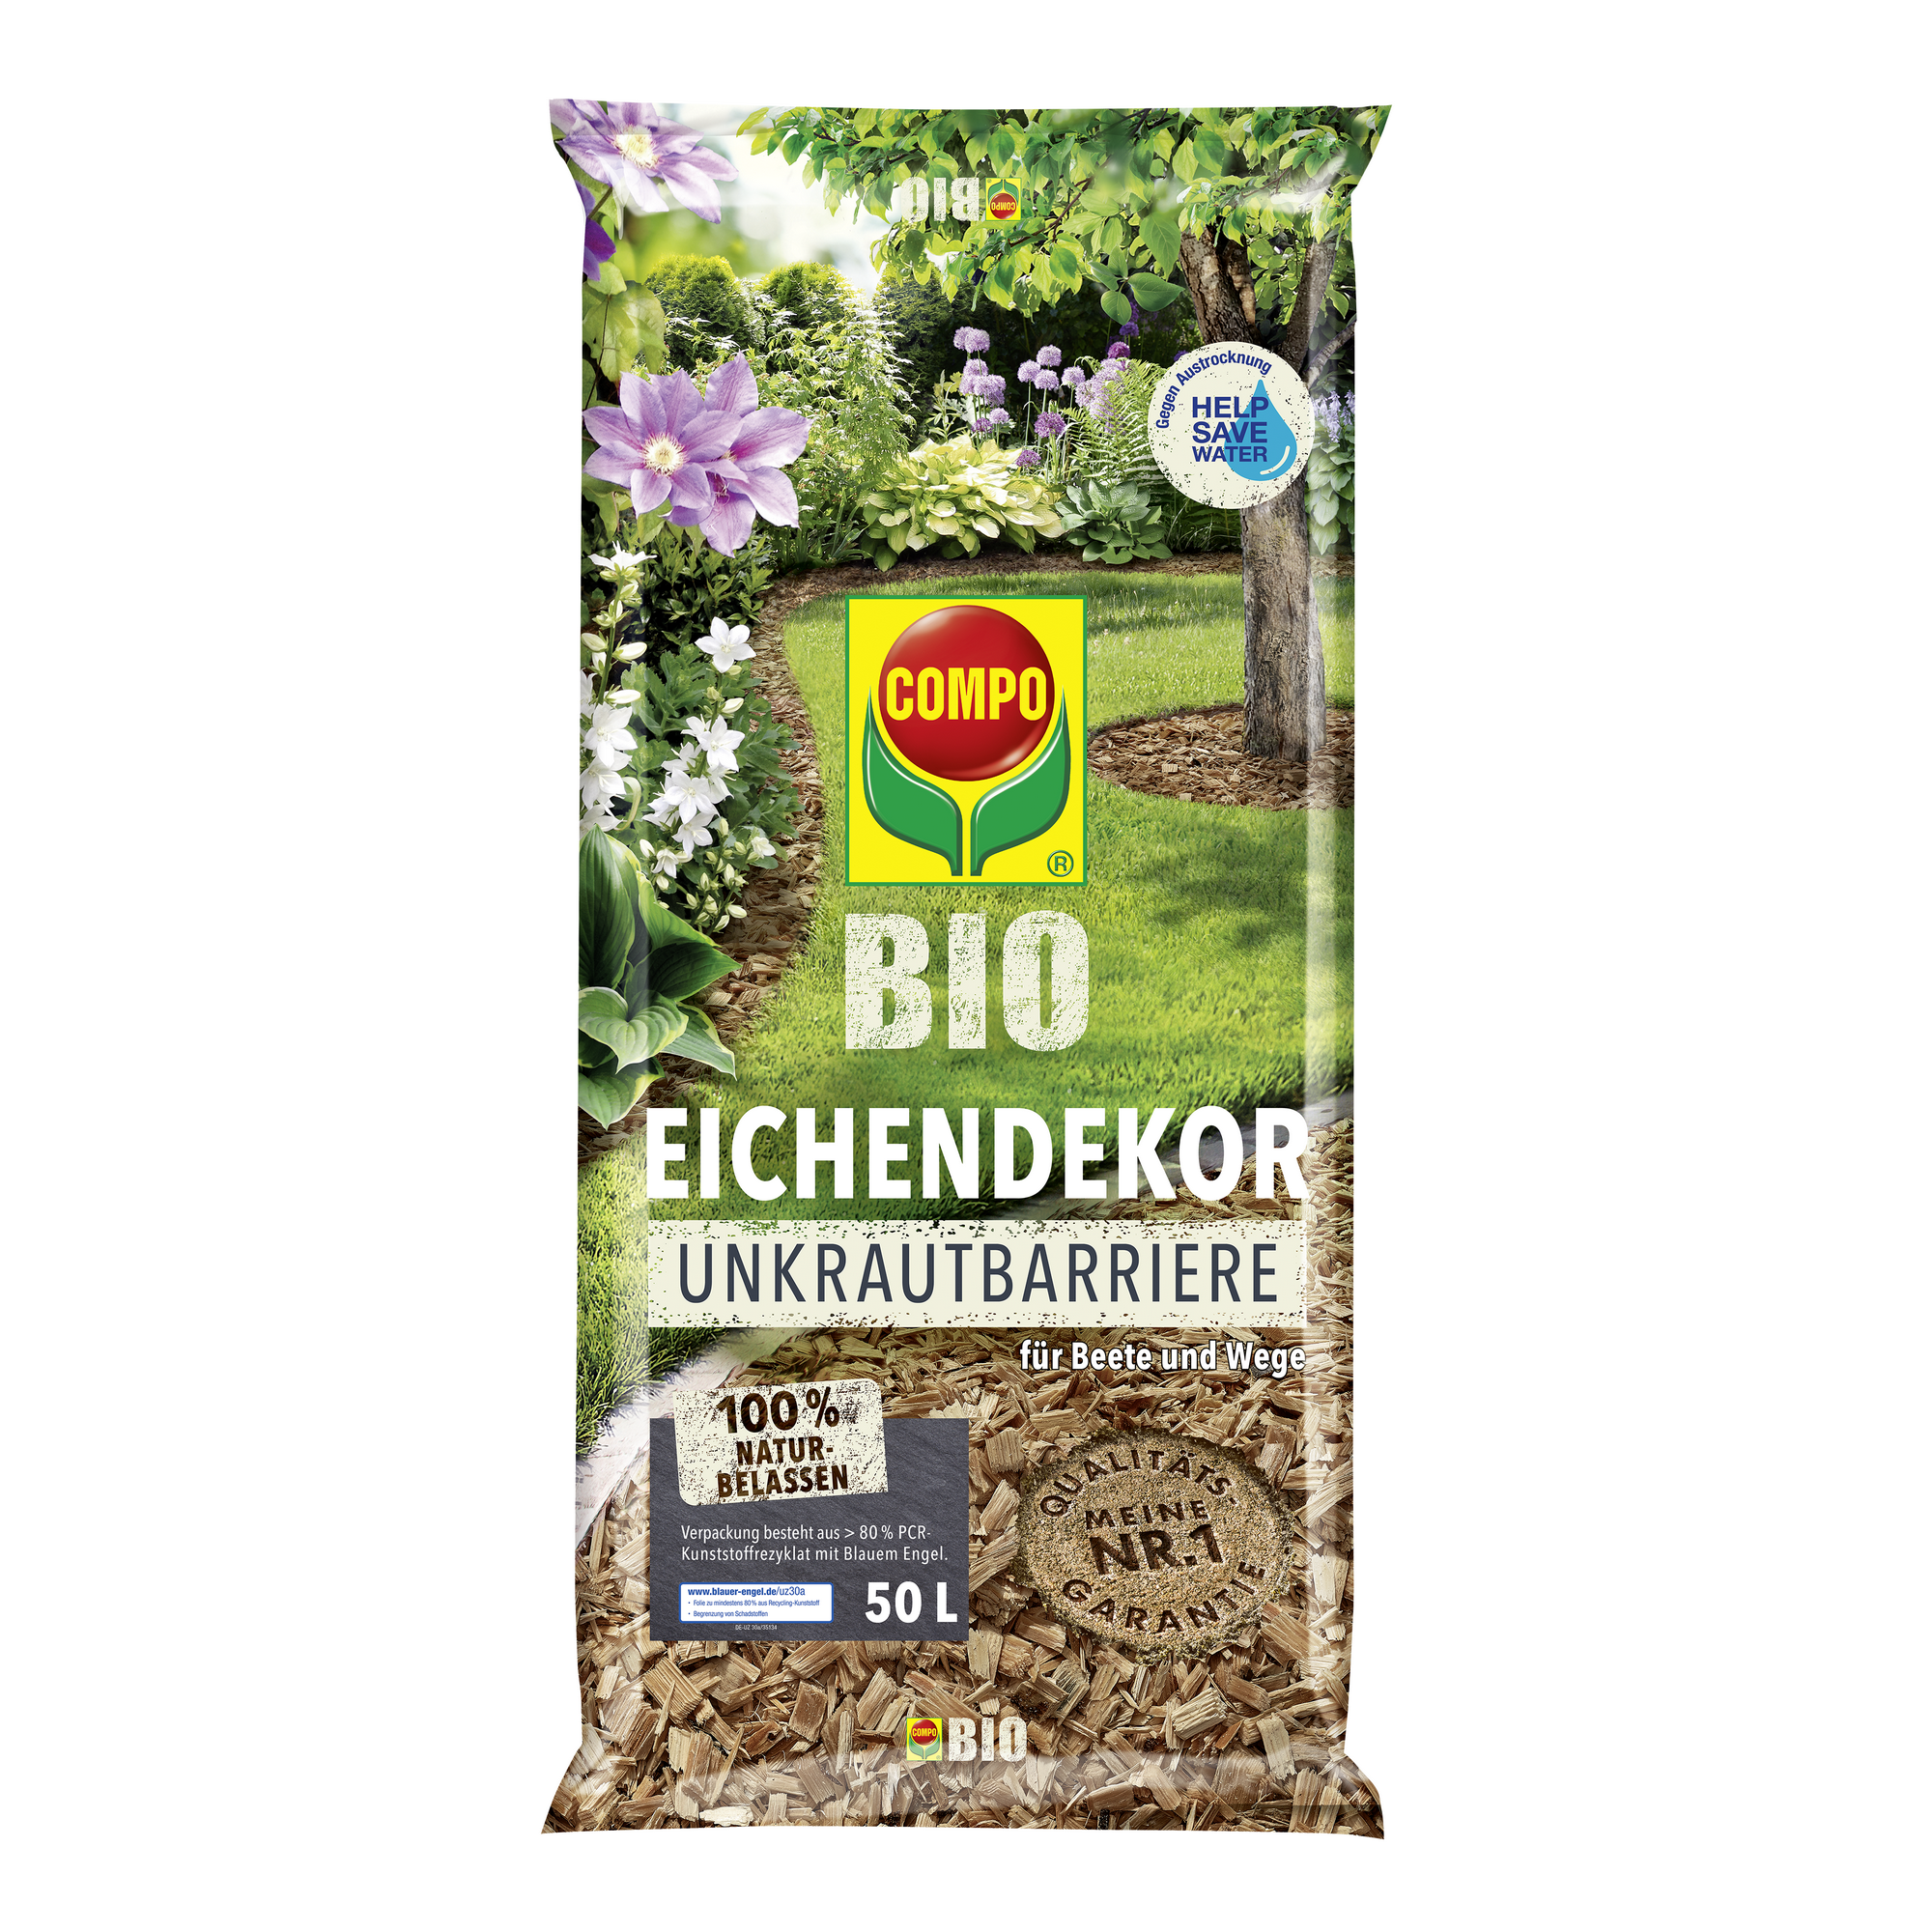 Bio-Eichendekor braun 50 l + product picture